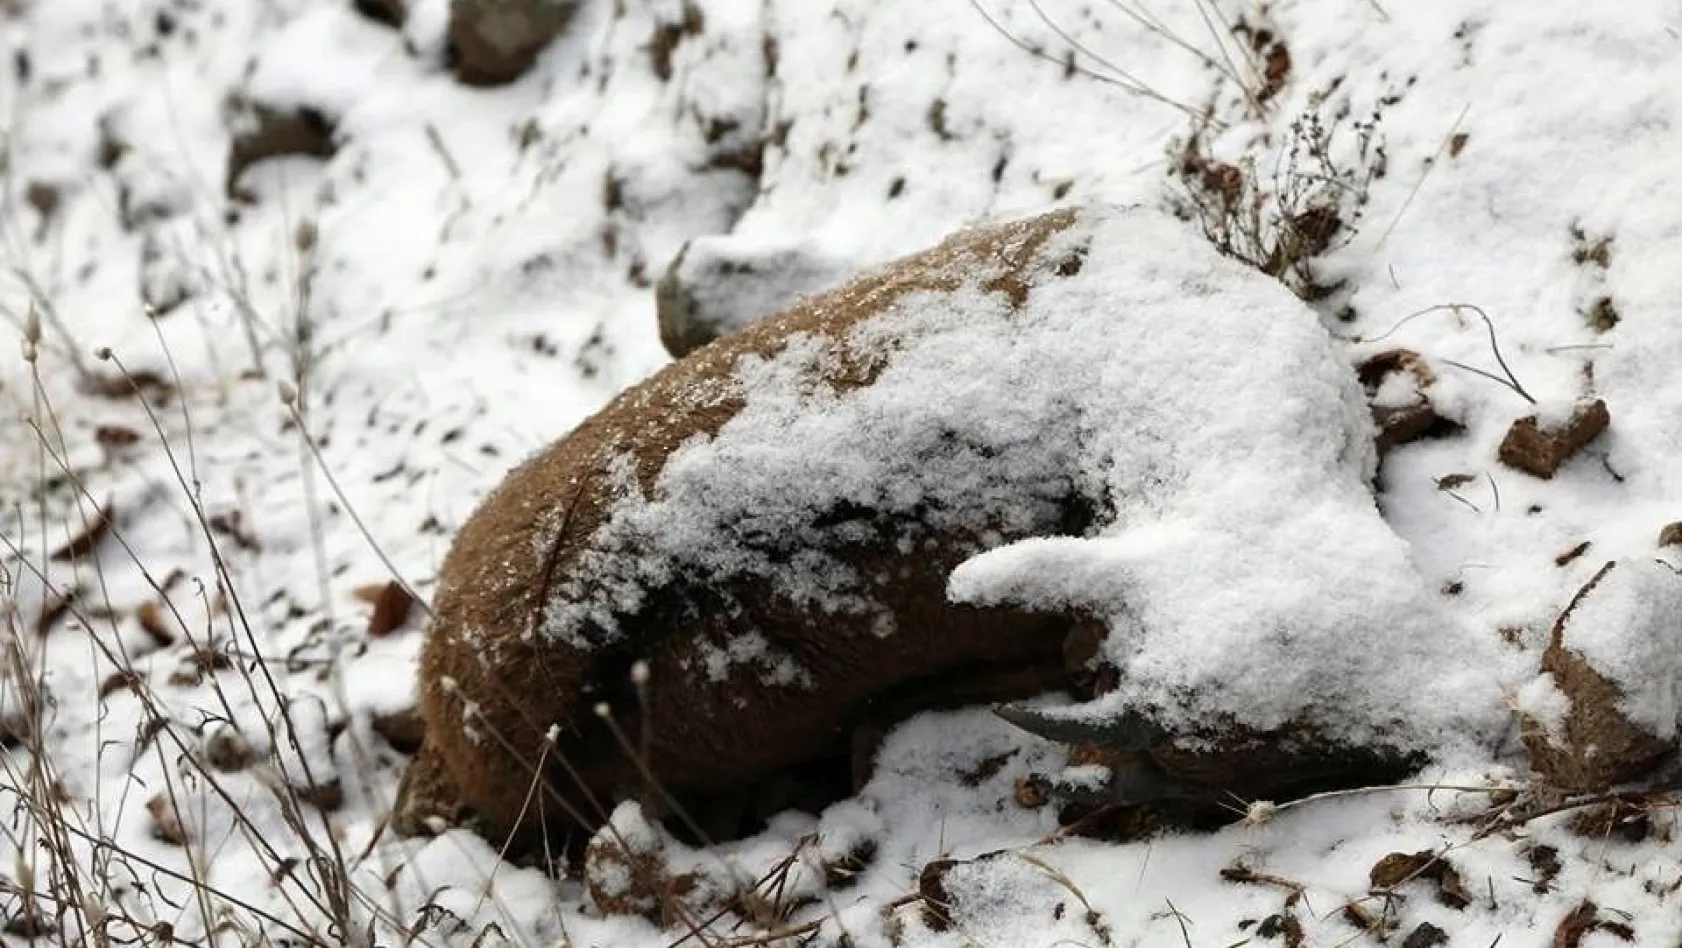 Tunceli'deki keçi ölümlerinin nedeni belli oldu